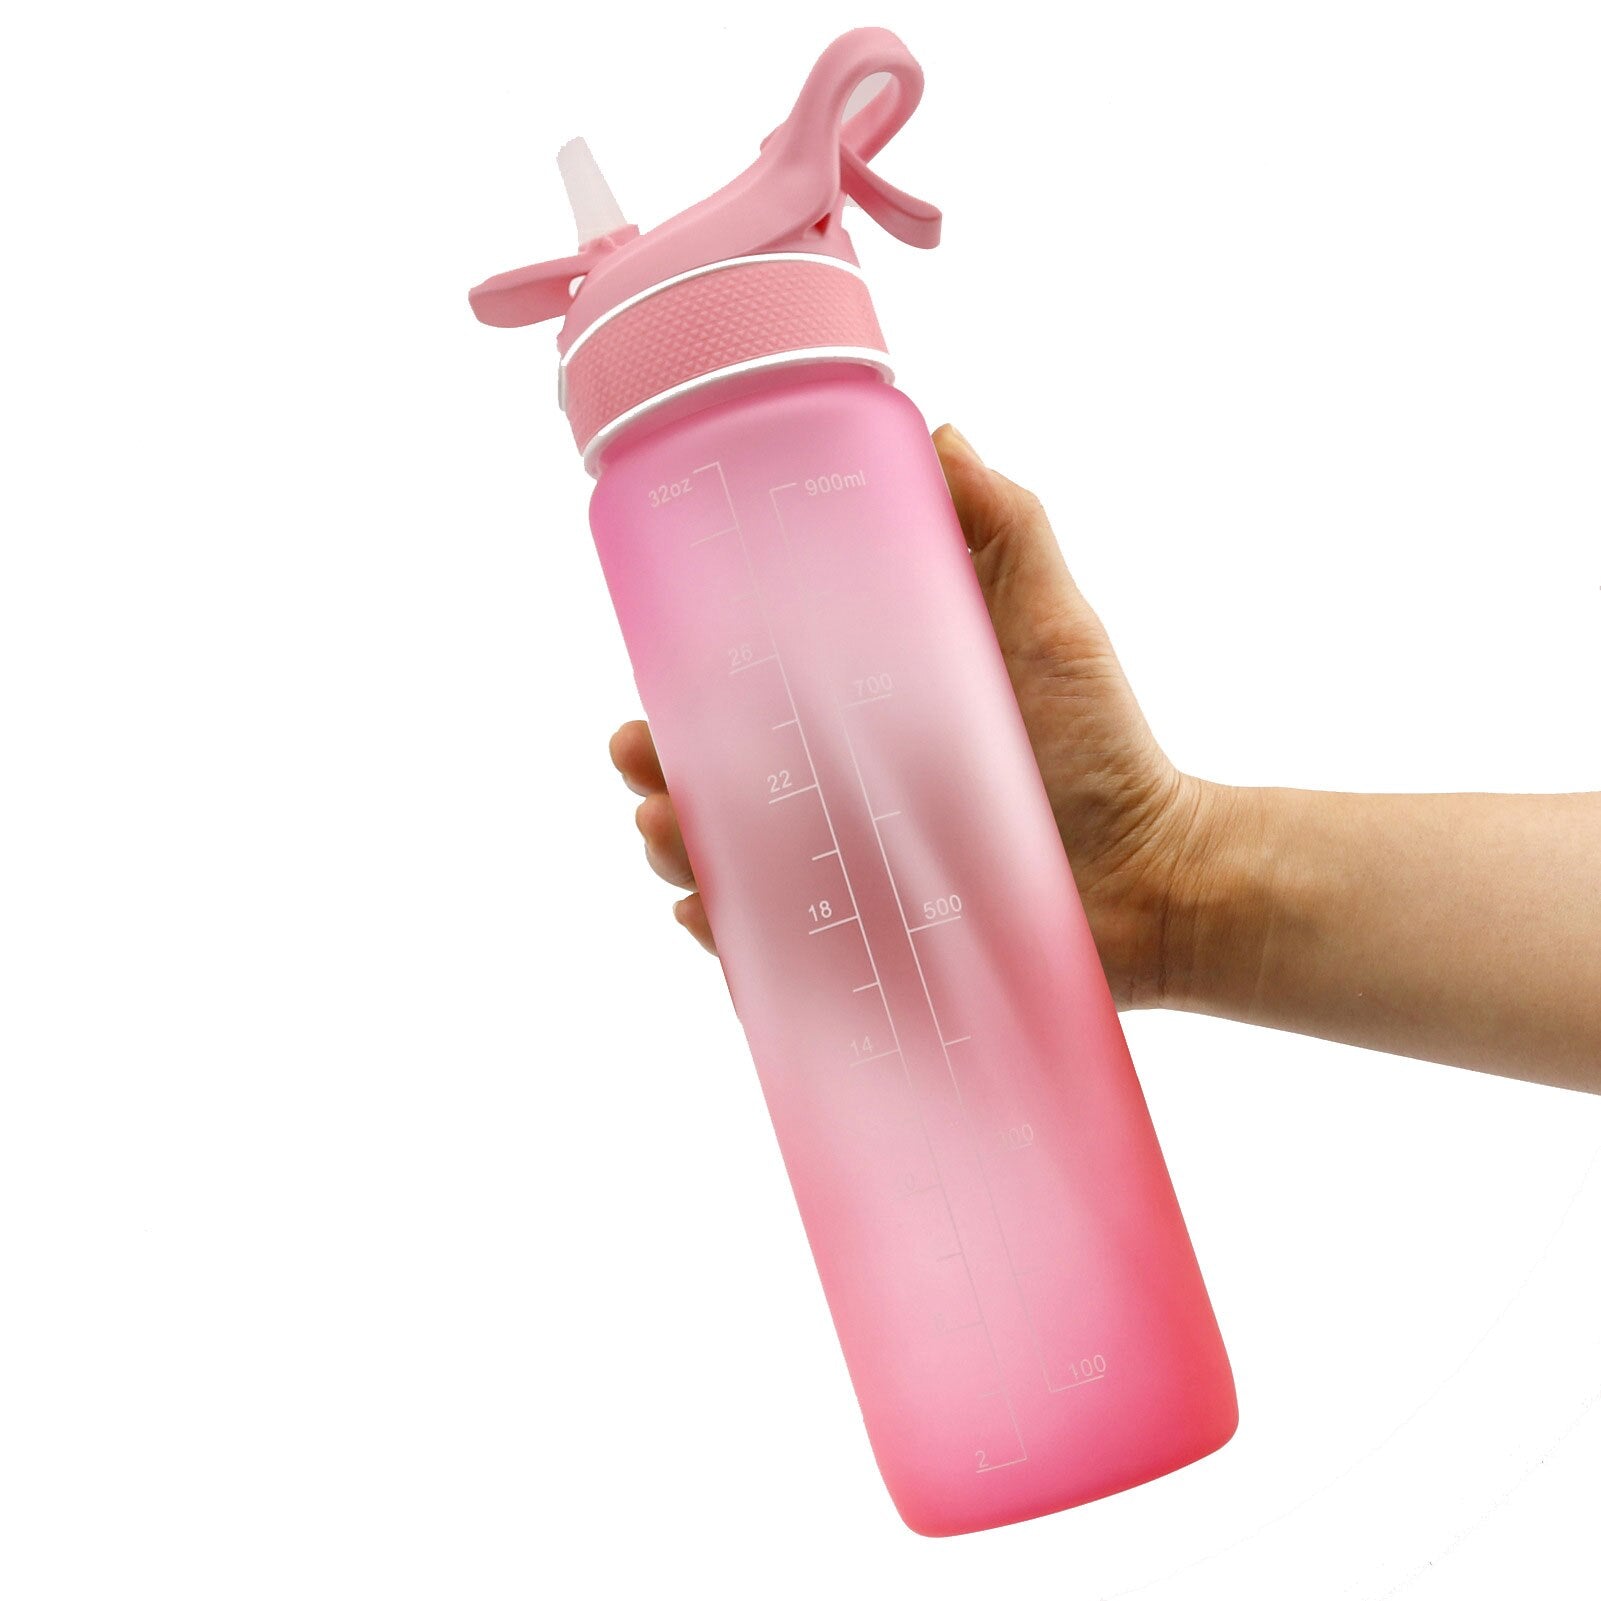 Eine Hand haelt eine Sporttrinkflasche mit einer Farbe Pink und Zeitmarkierung zur Fluessigkeitsverfolgung.